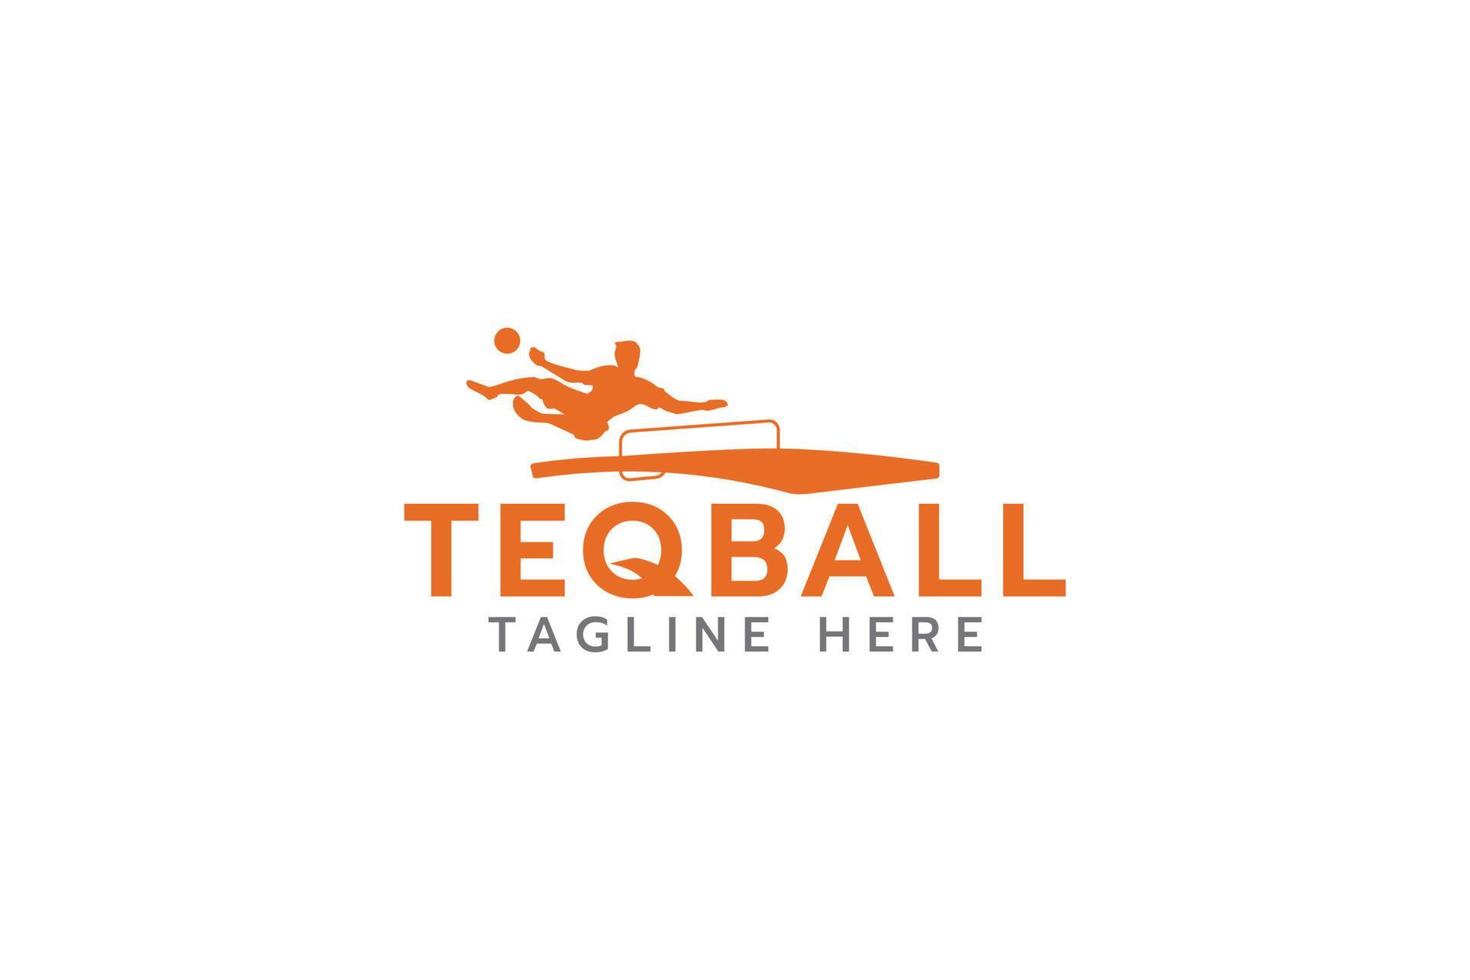 teqball logo met silhouet van persoon jumping in teqball spel. vector